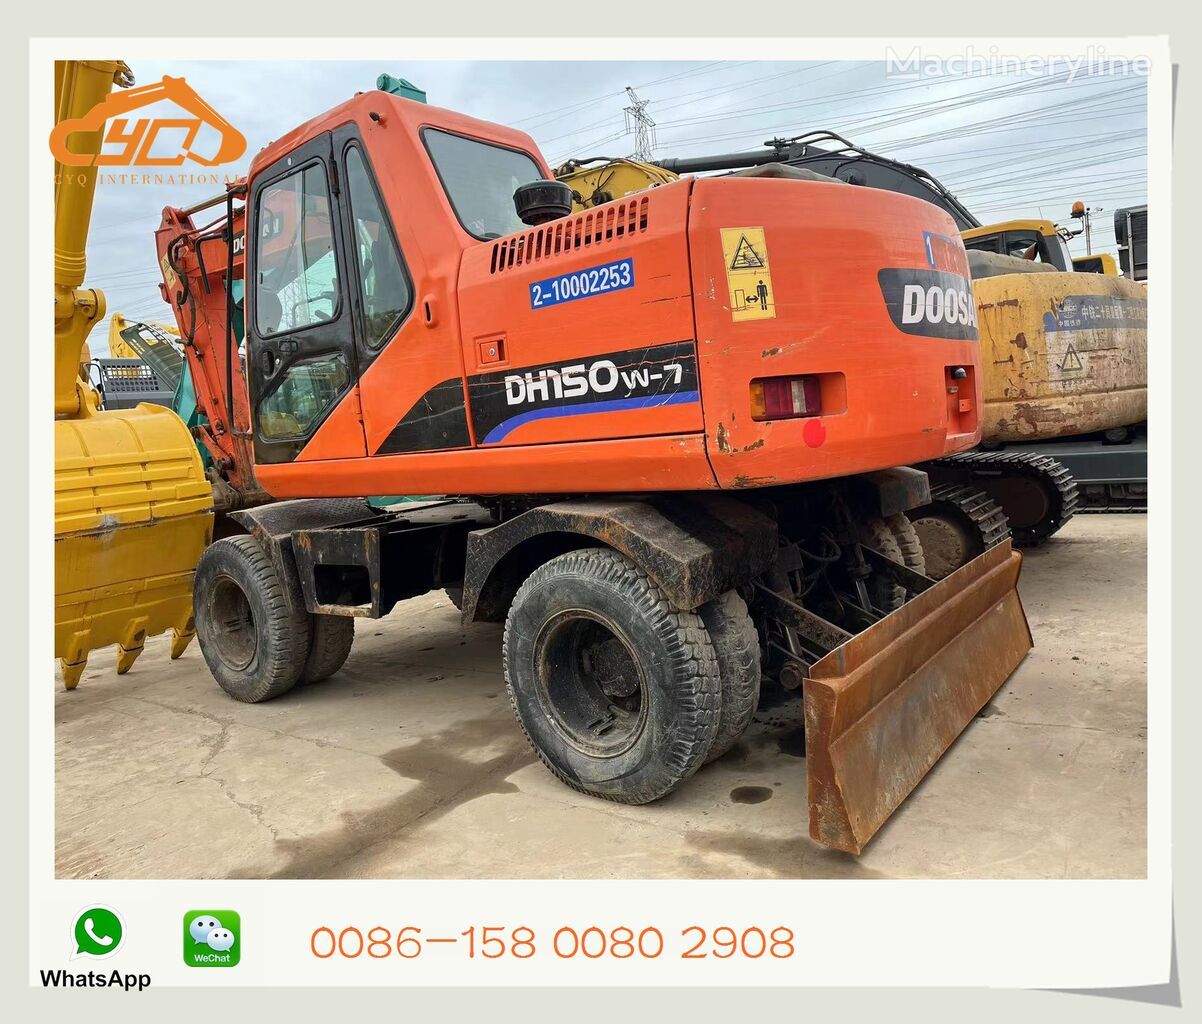 Doosan DH150W-7 wheel excavator